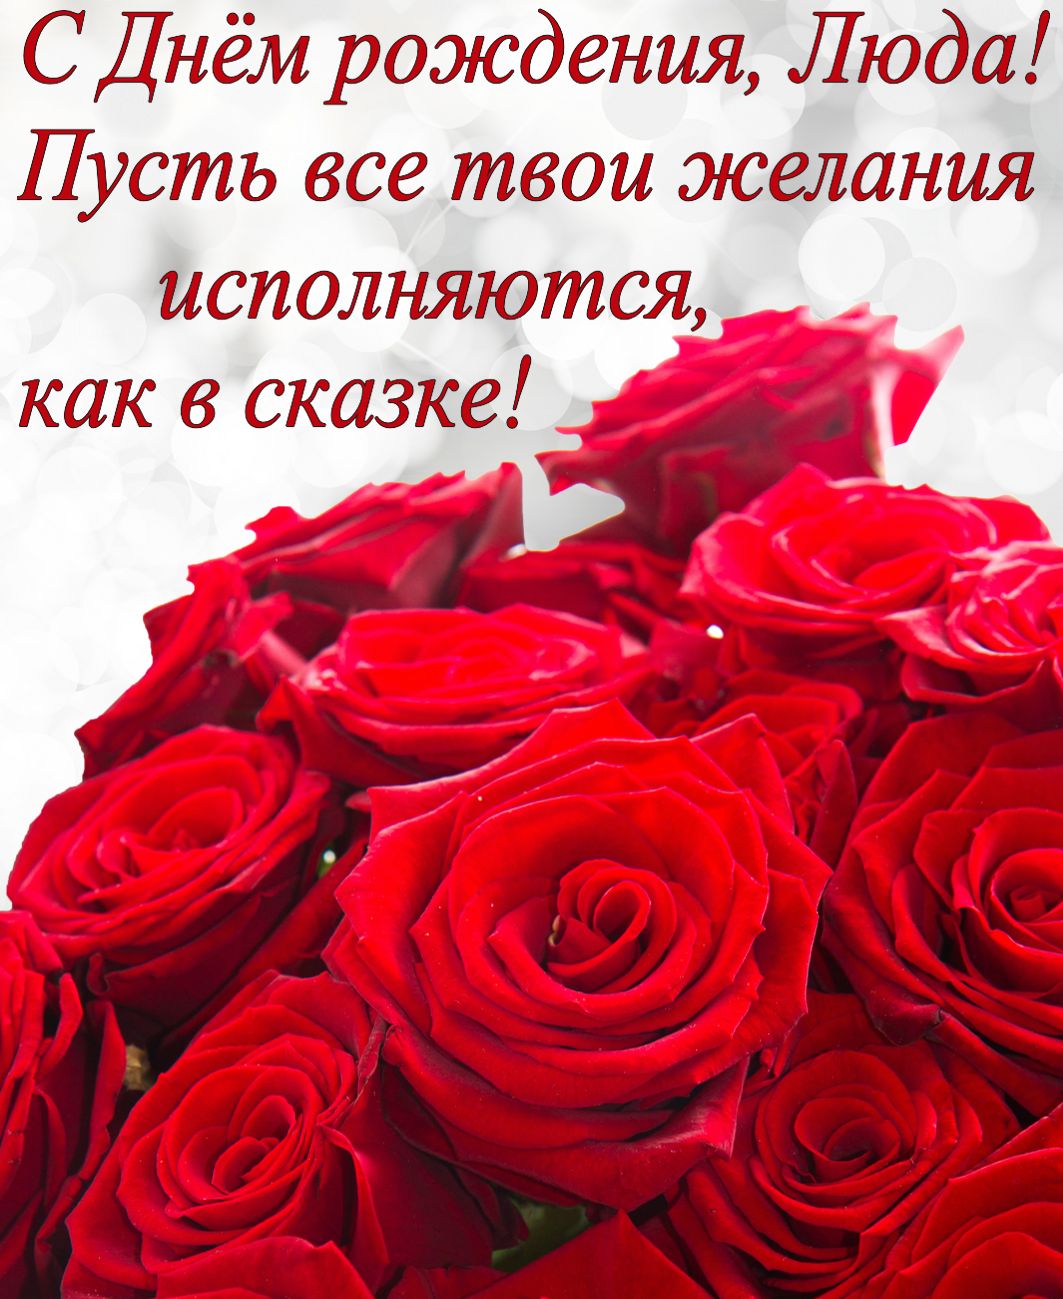 Красные розы и пожелание для Люды